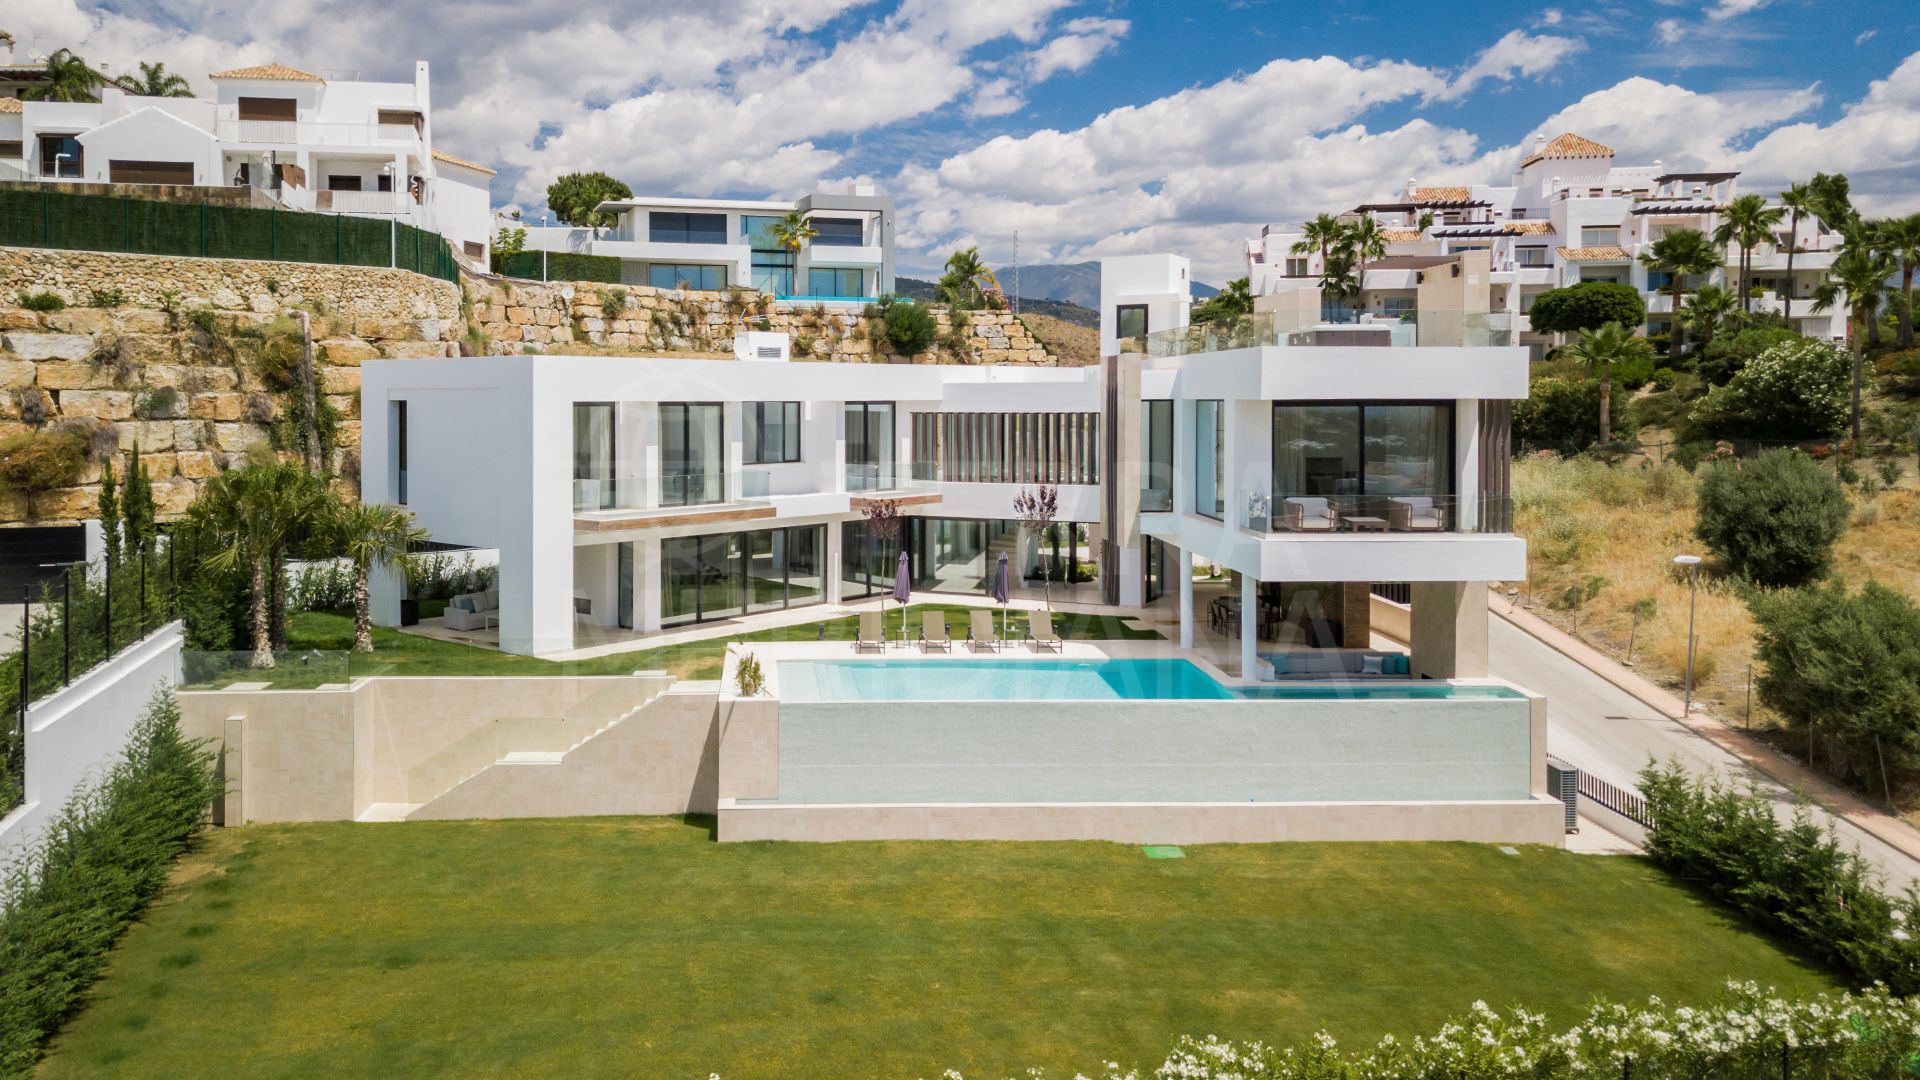 One-of-a-kind contemporary luxury villa with golf and sea vistas for sale in prime La Alqueria, Benahavis